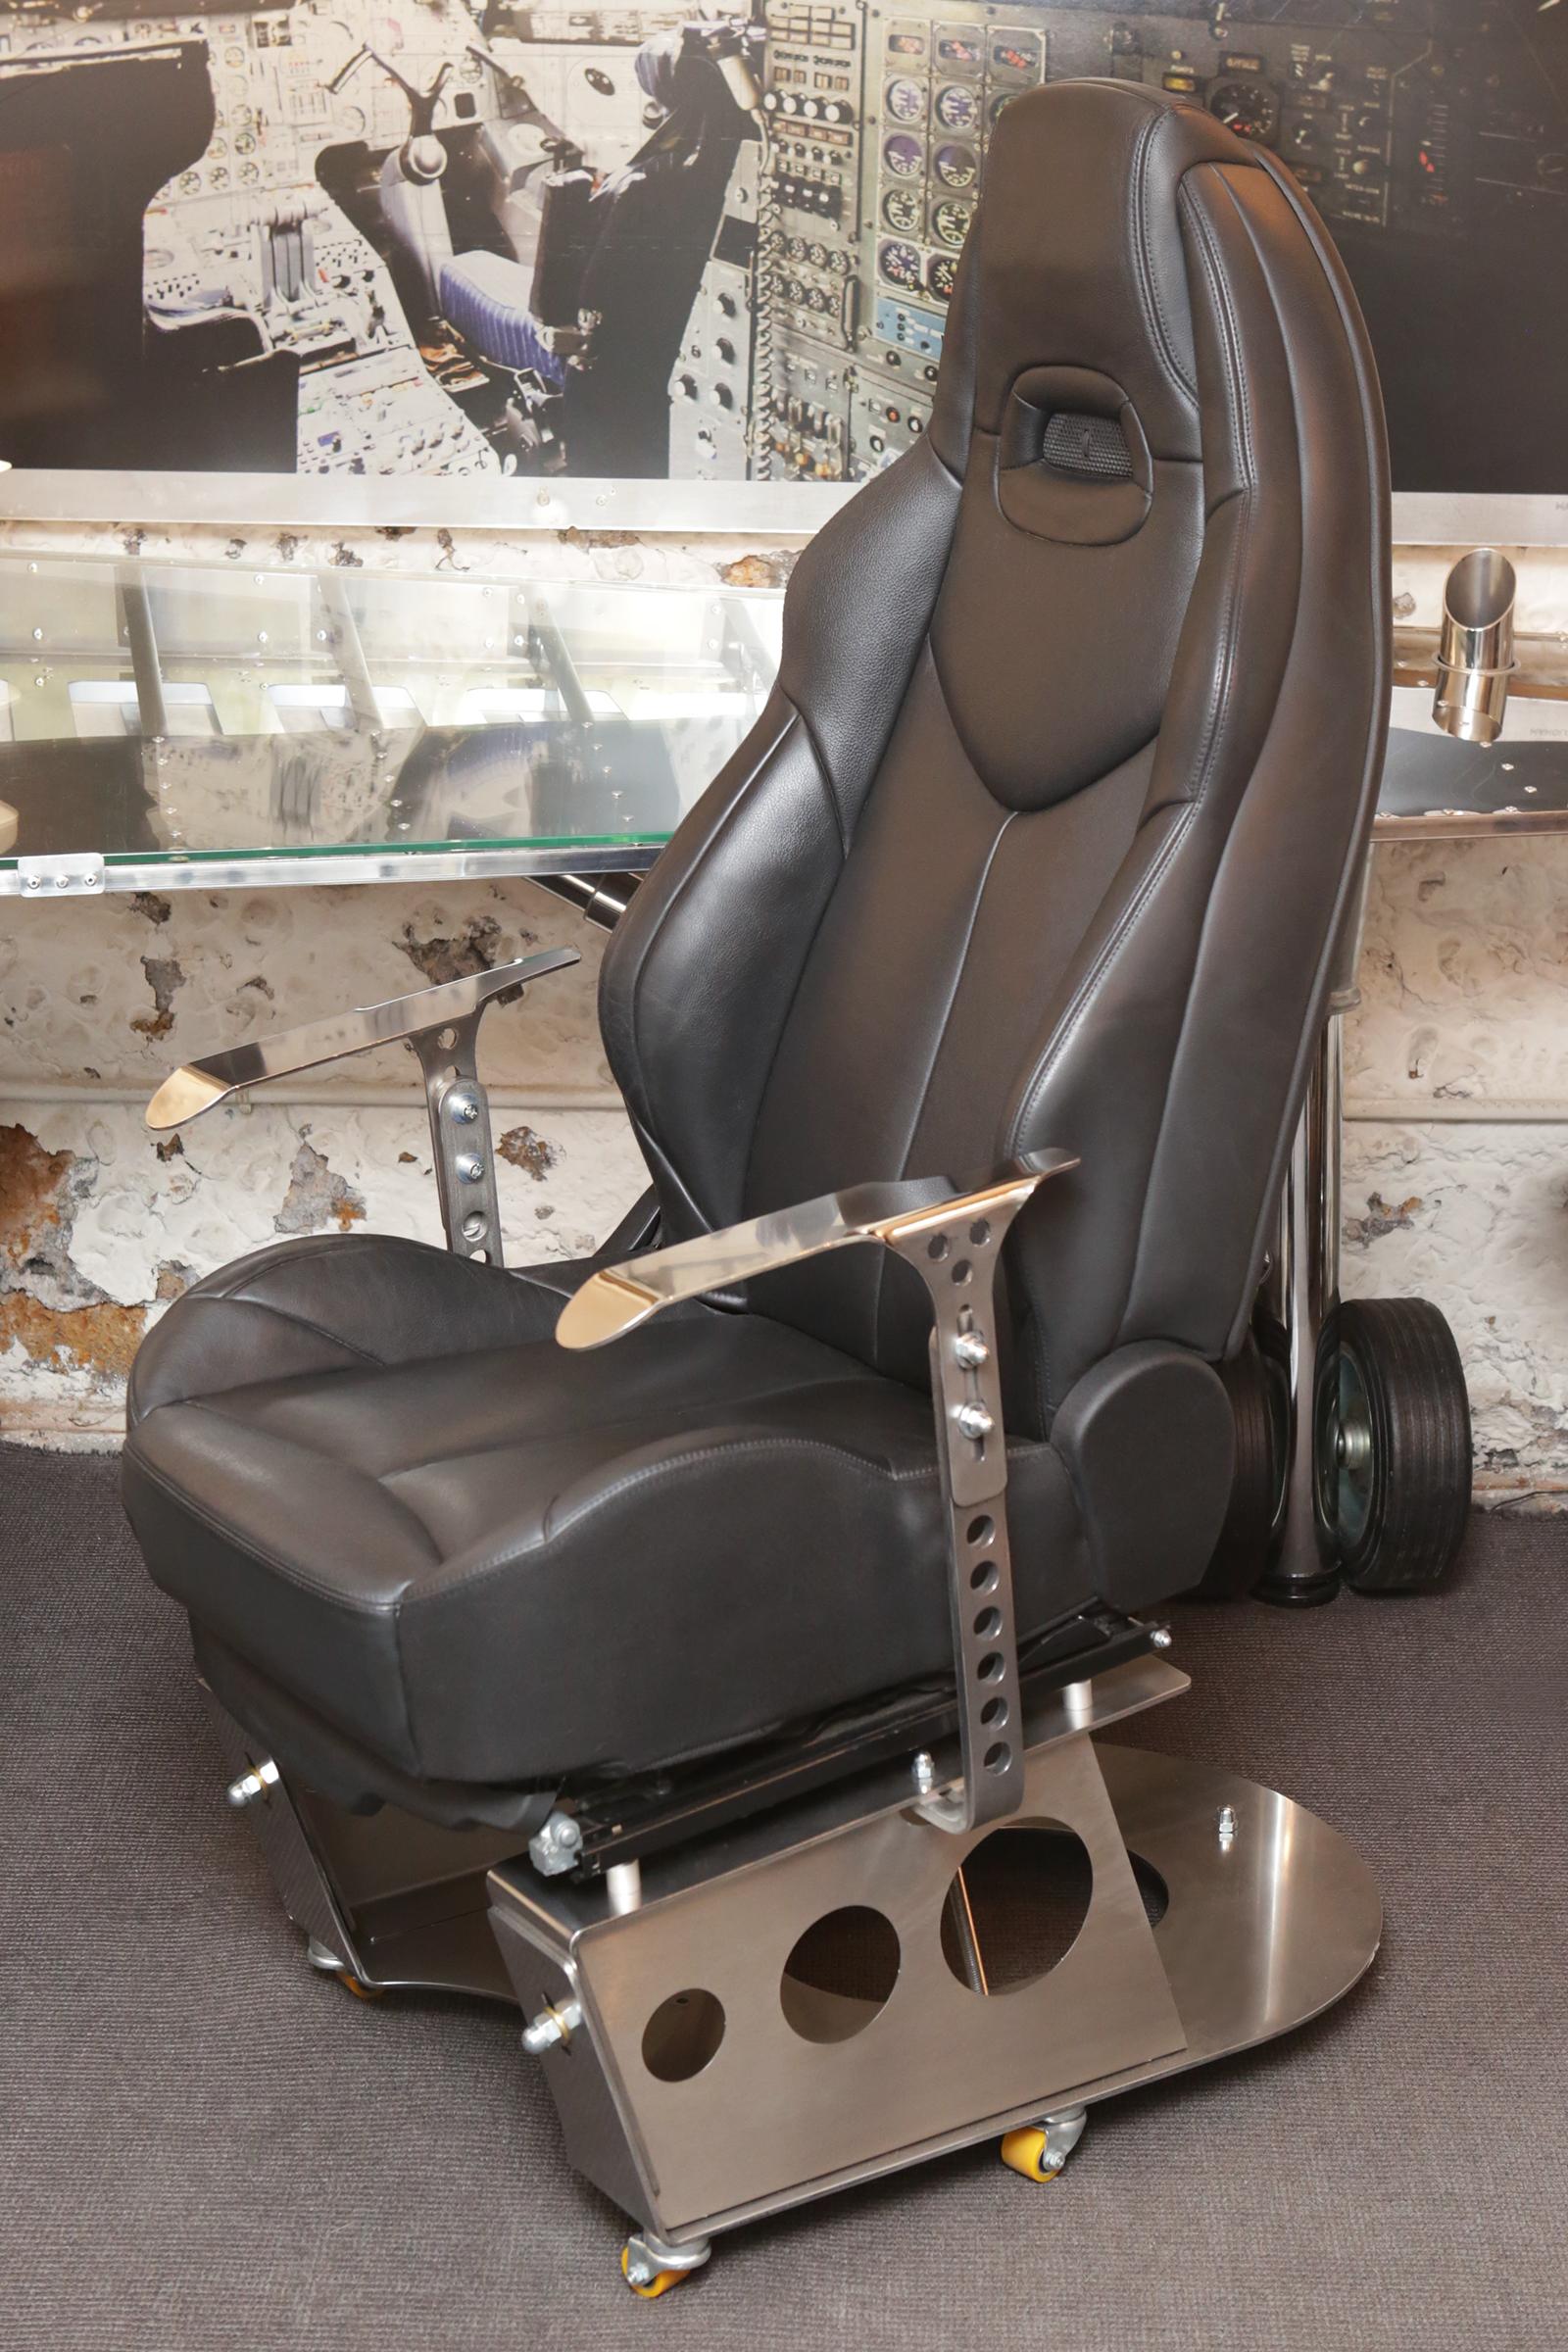 Fauteuil de bureau de pilote de course fabriqué à partir d'un fauteuil électrique noir
siège en cuir de 308 CC coupé cabriolet, monté sur un cadre en acier poli
acier inoxydable solide. Les réglages électriques du siège vous permettent de